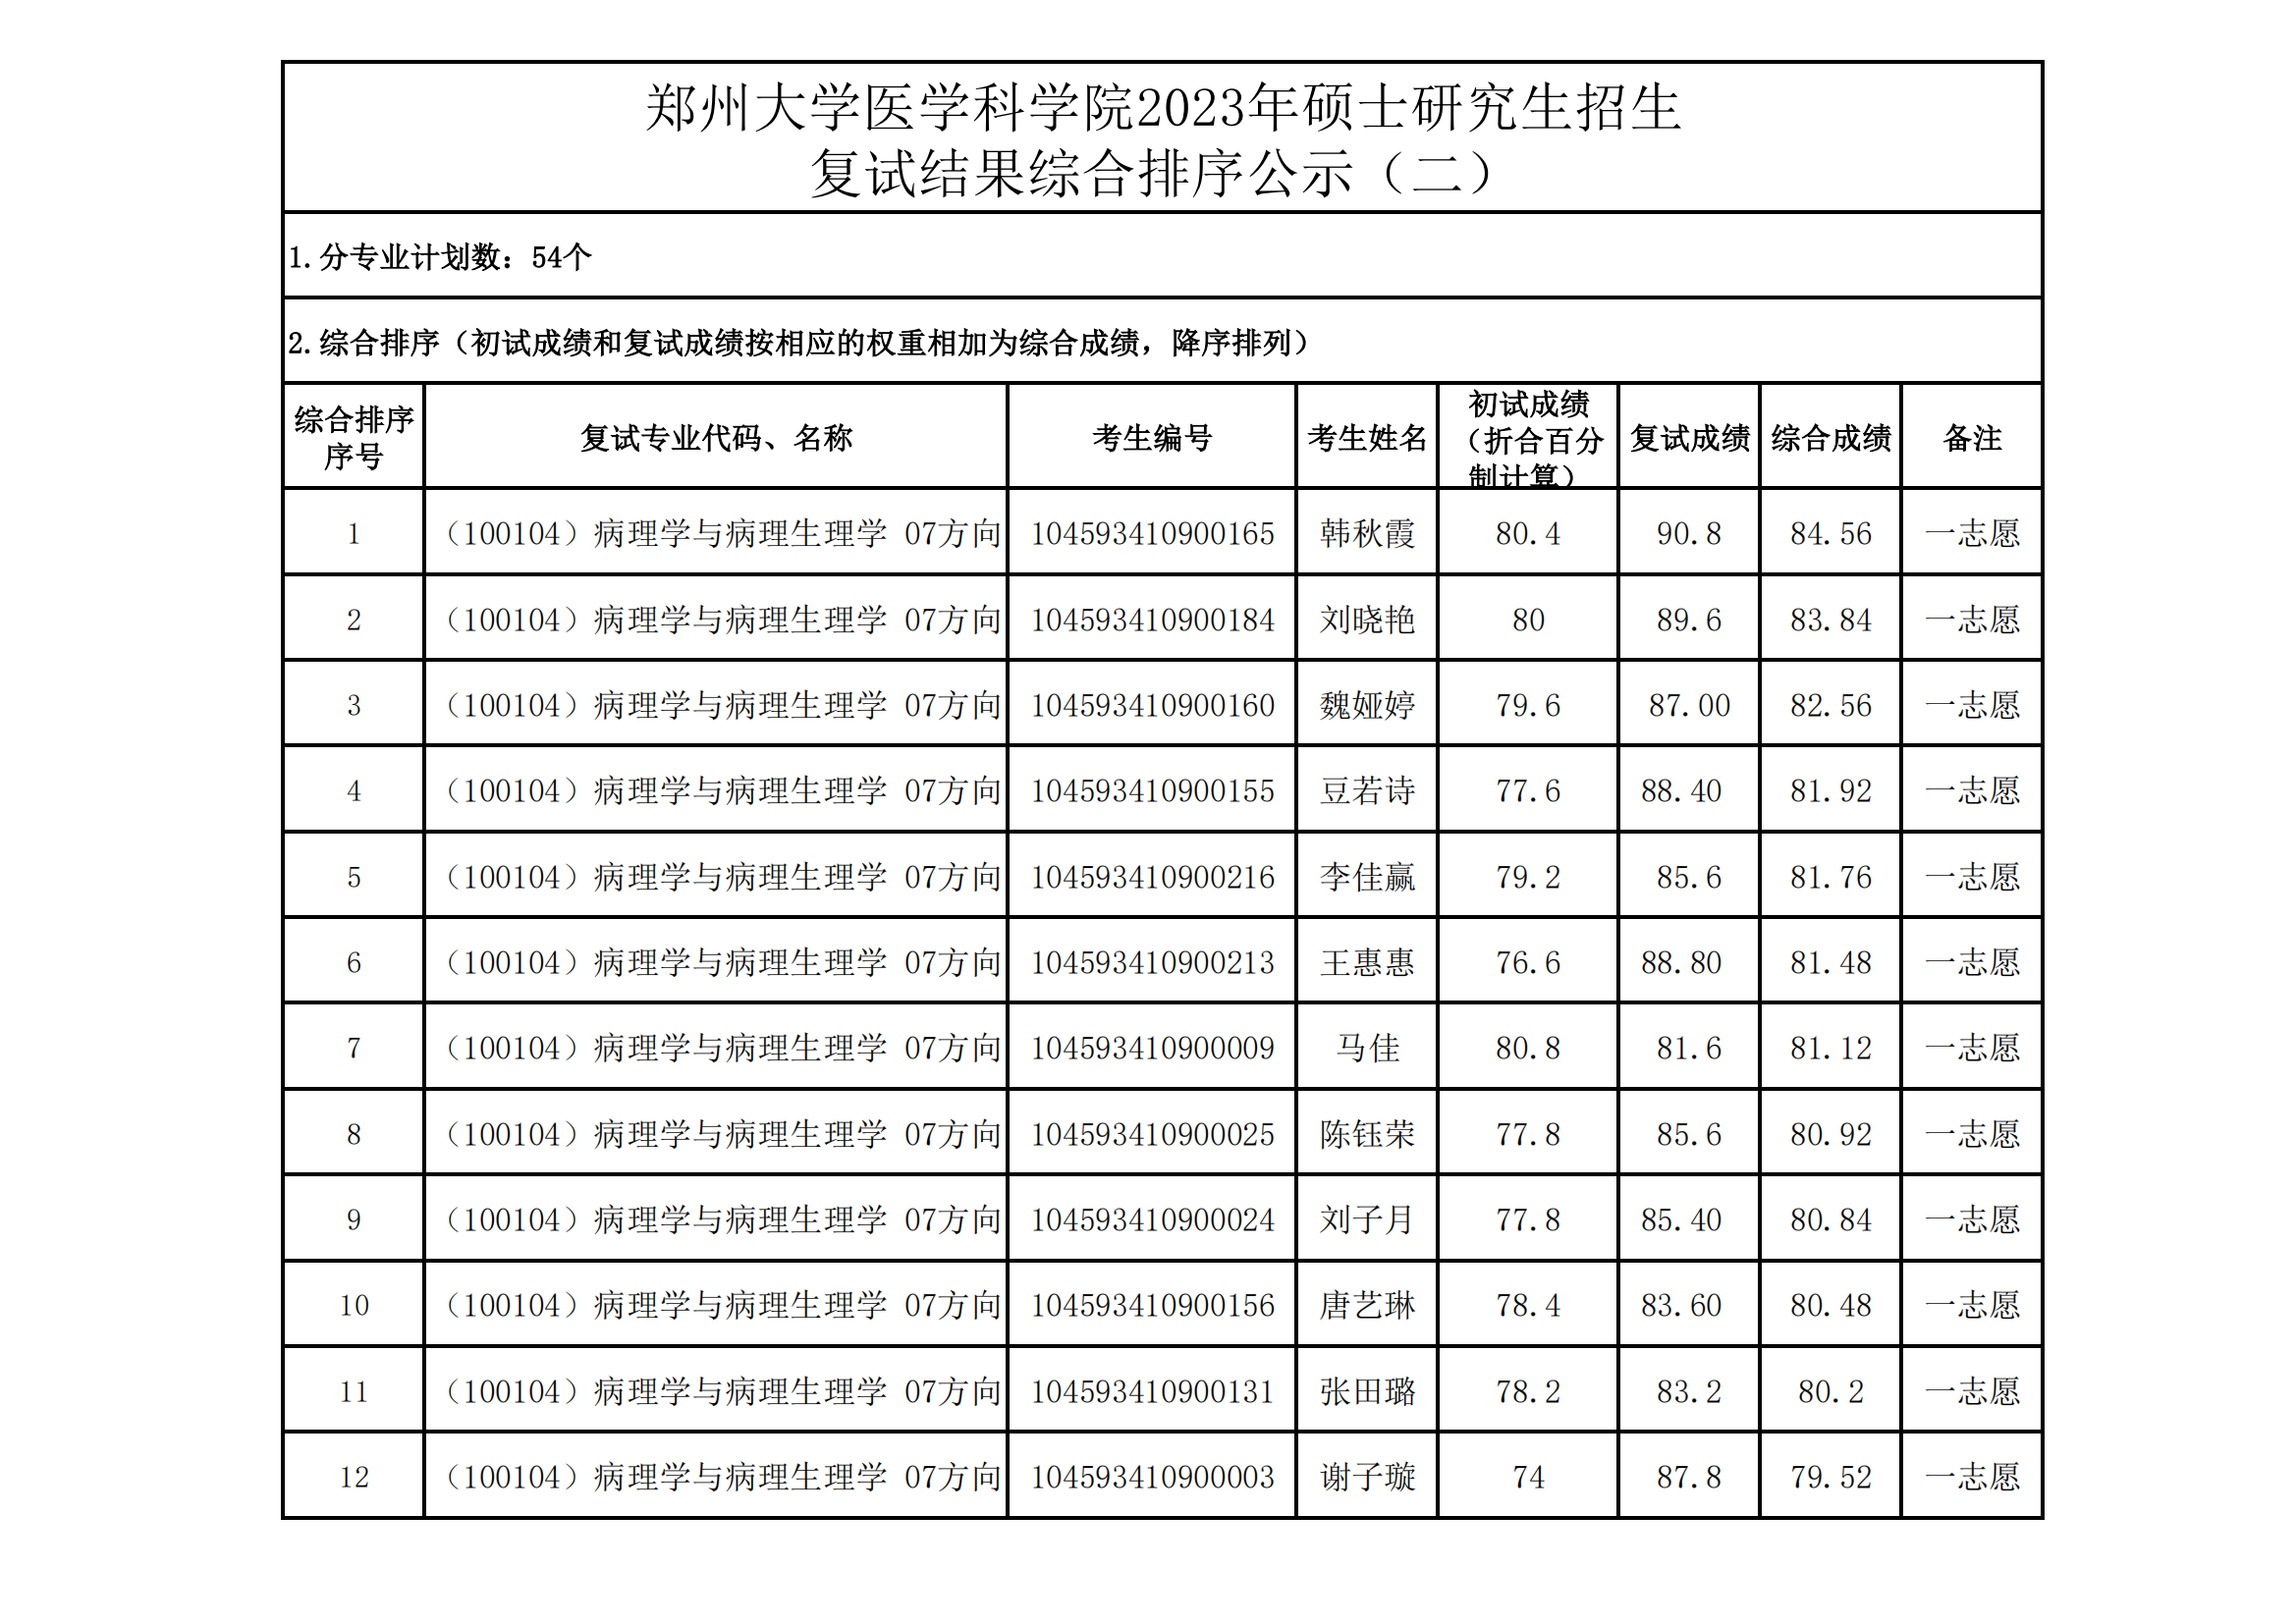 郑州大学医学科学院2023年硕士研究生招生复试结果综合排序公示（二）_00.png